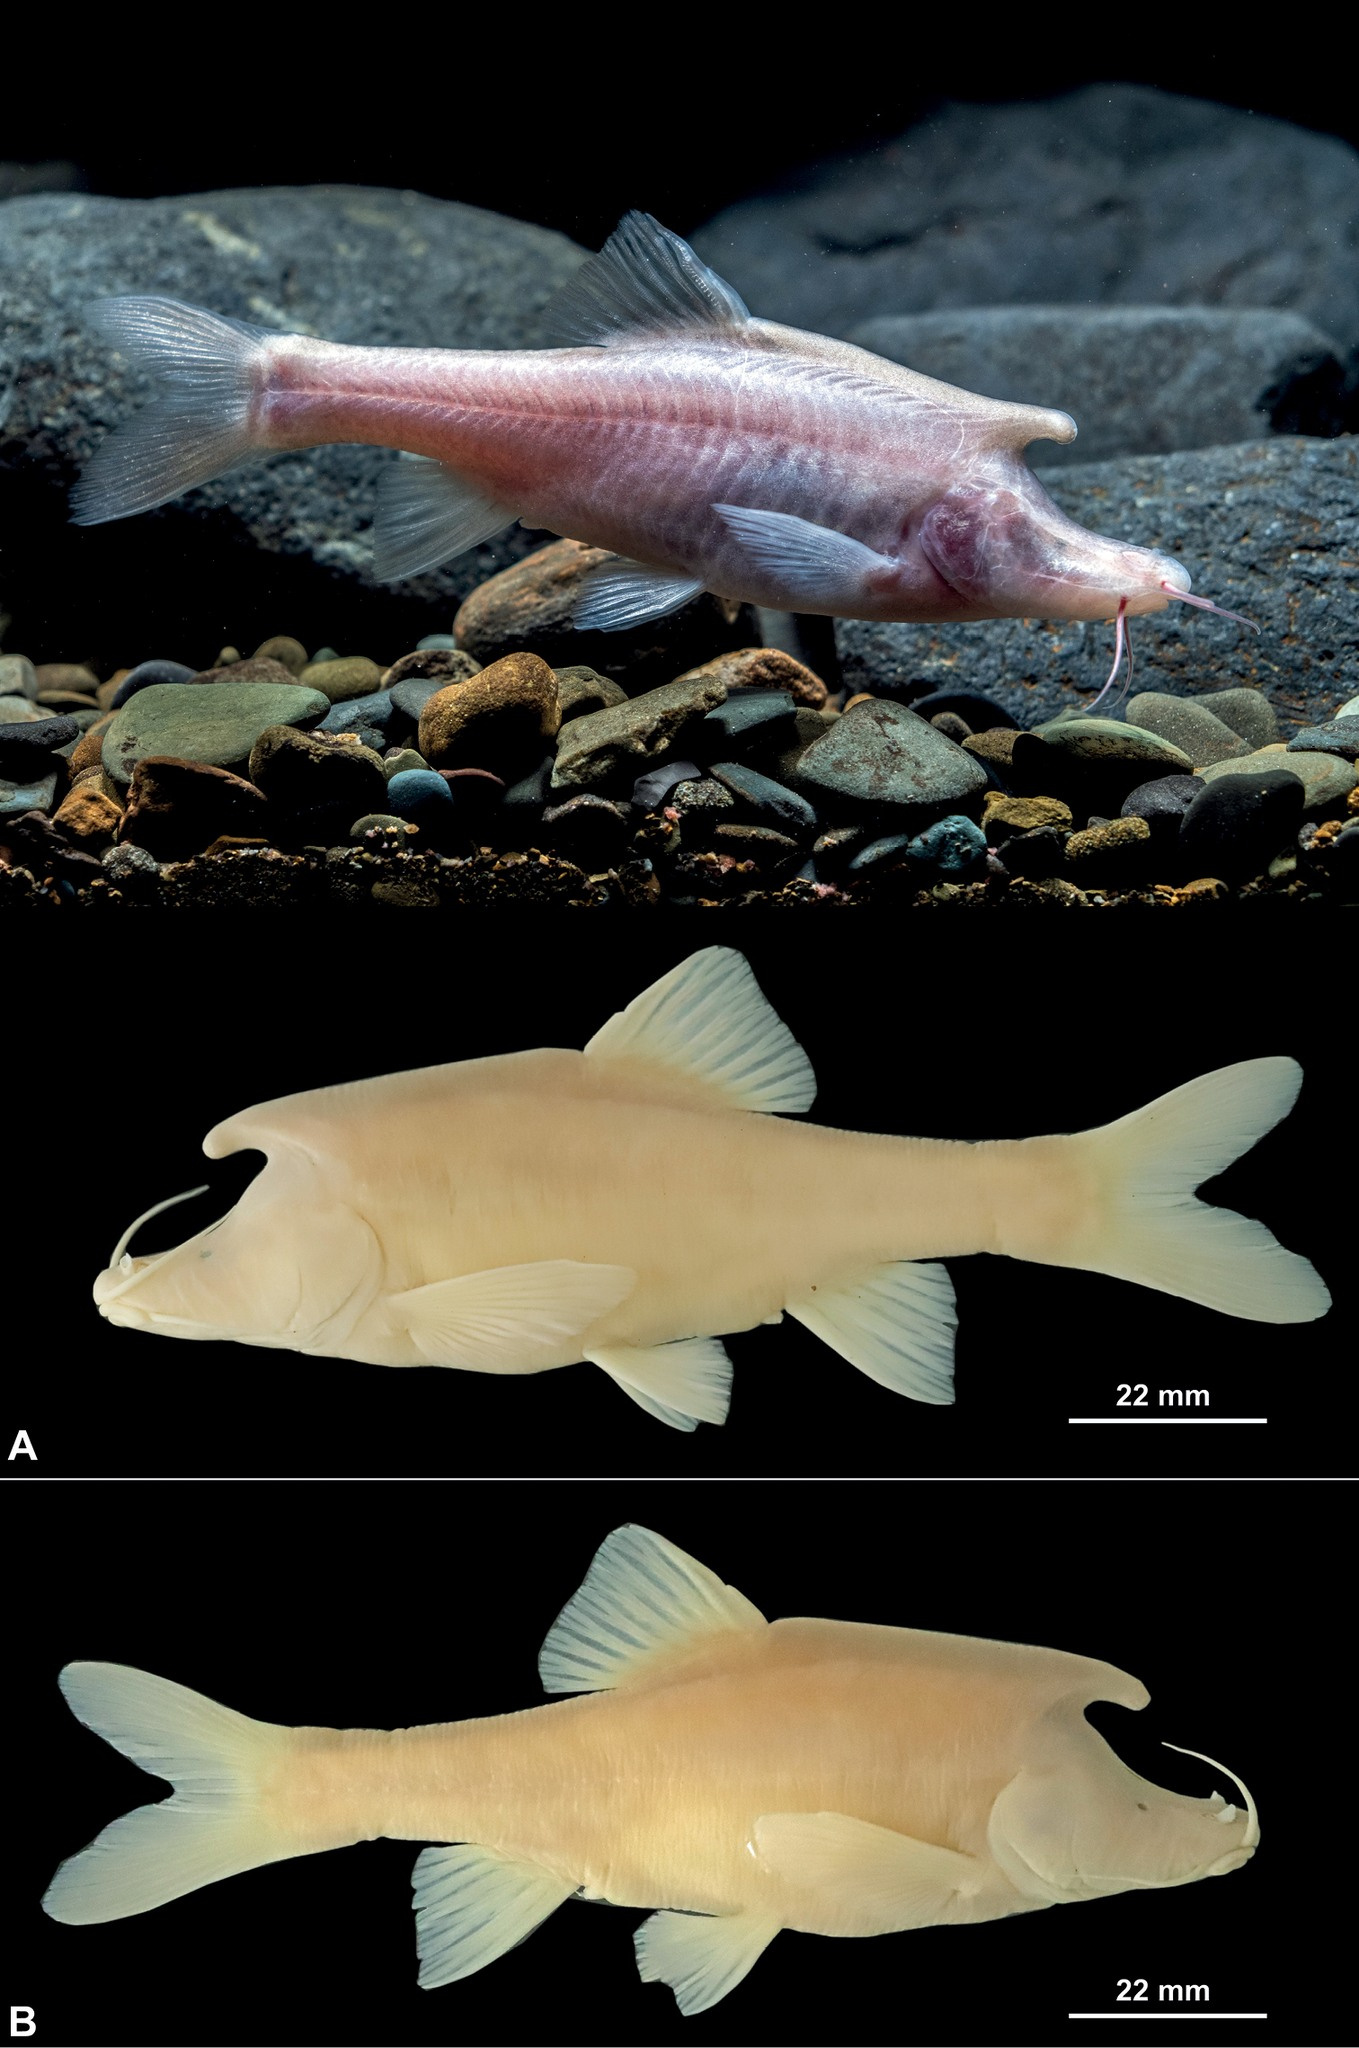 贵州盘州市红果镇北盘江流域洞穴中发现长着“独角”的盲鱼新物种长角金线䰾